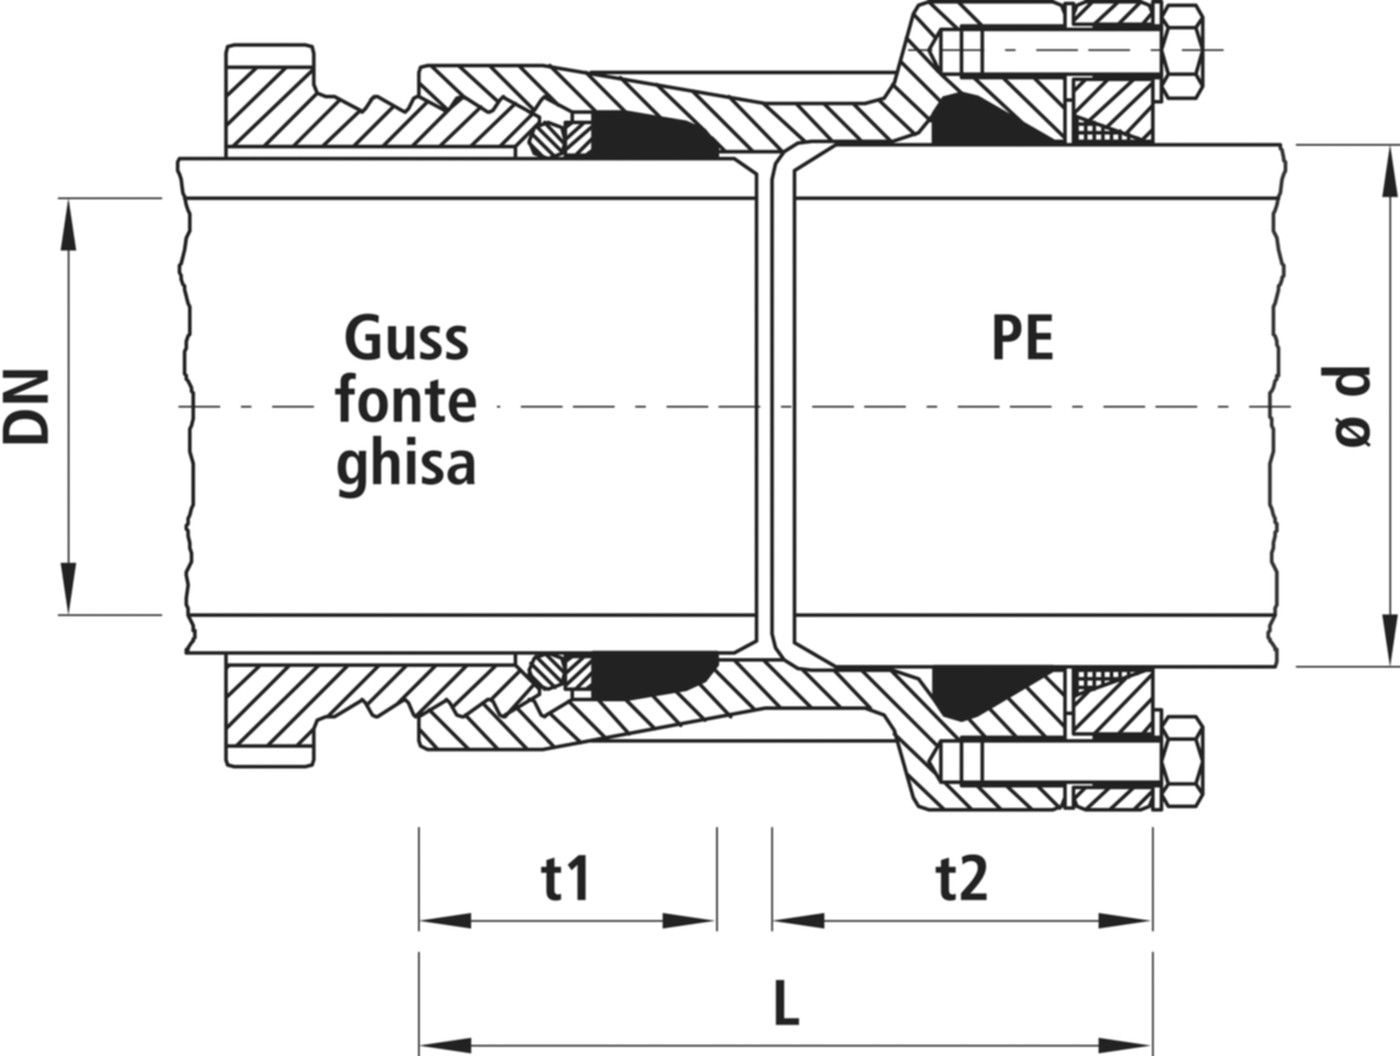 Verbinder Guss/PE, für Wasser 7230 DN 150 / d 160mm - Hawle System 2000